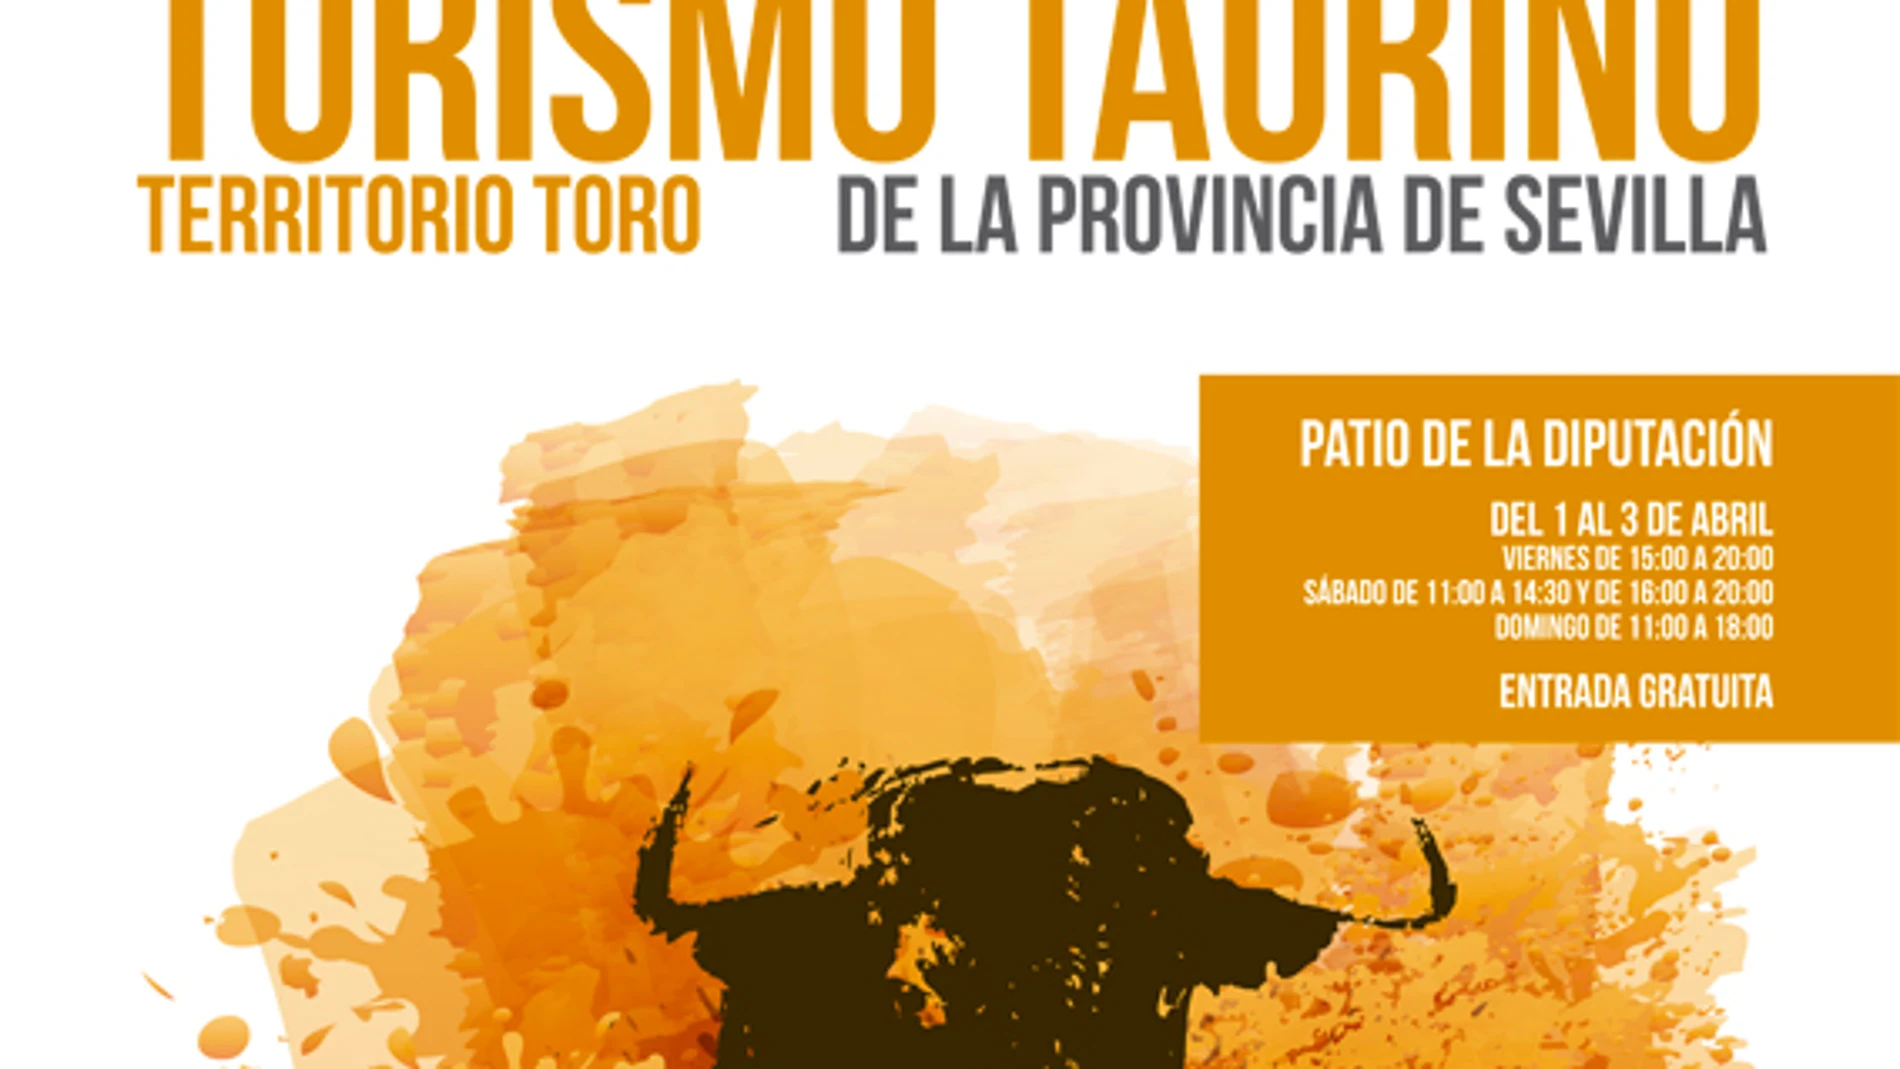 Territorio Toro contará con 30 stands y muchas actividades